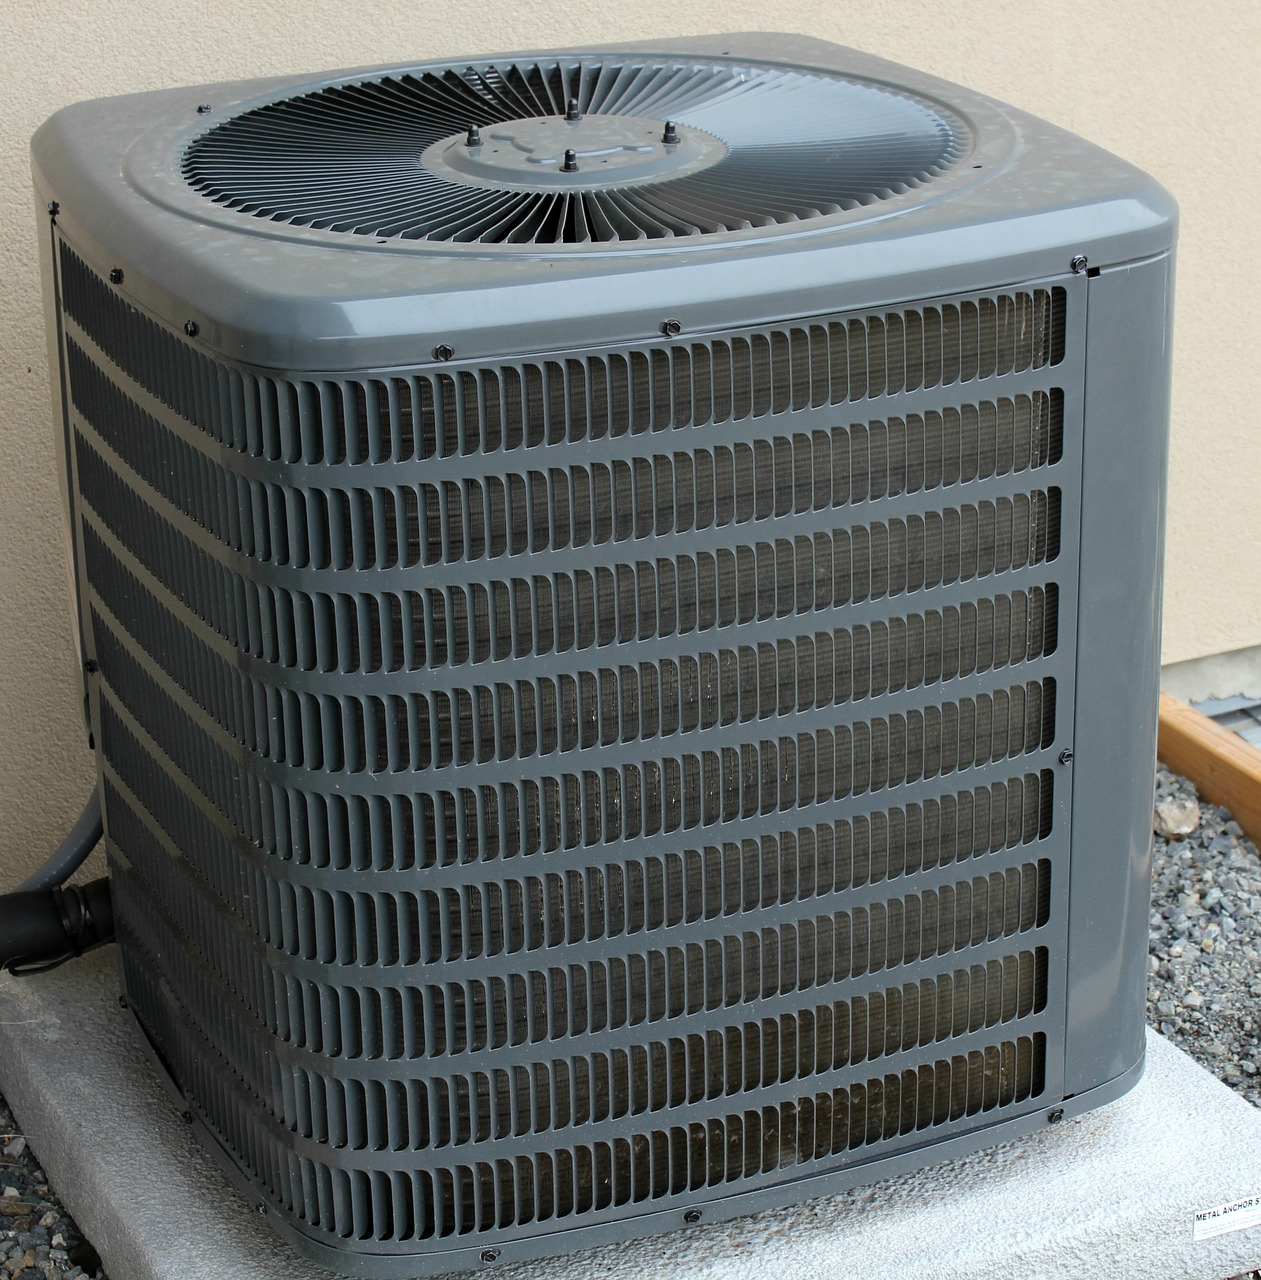 air-conditioner-2361907_1280